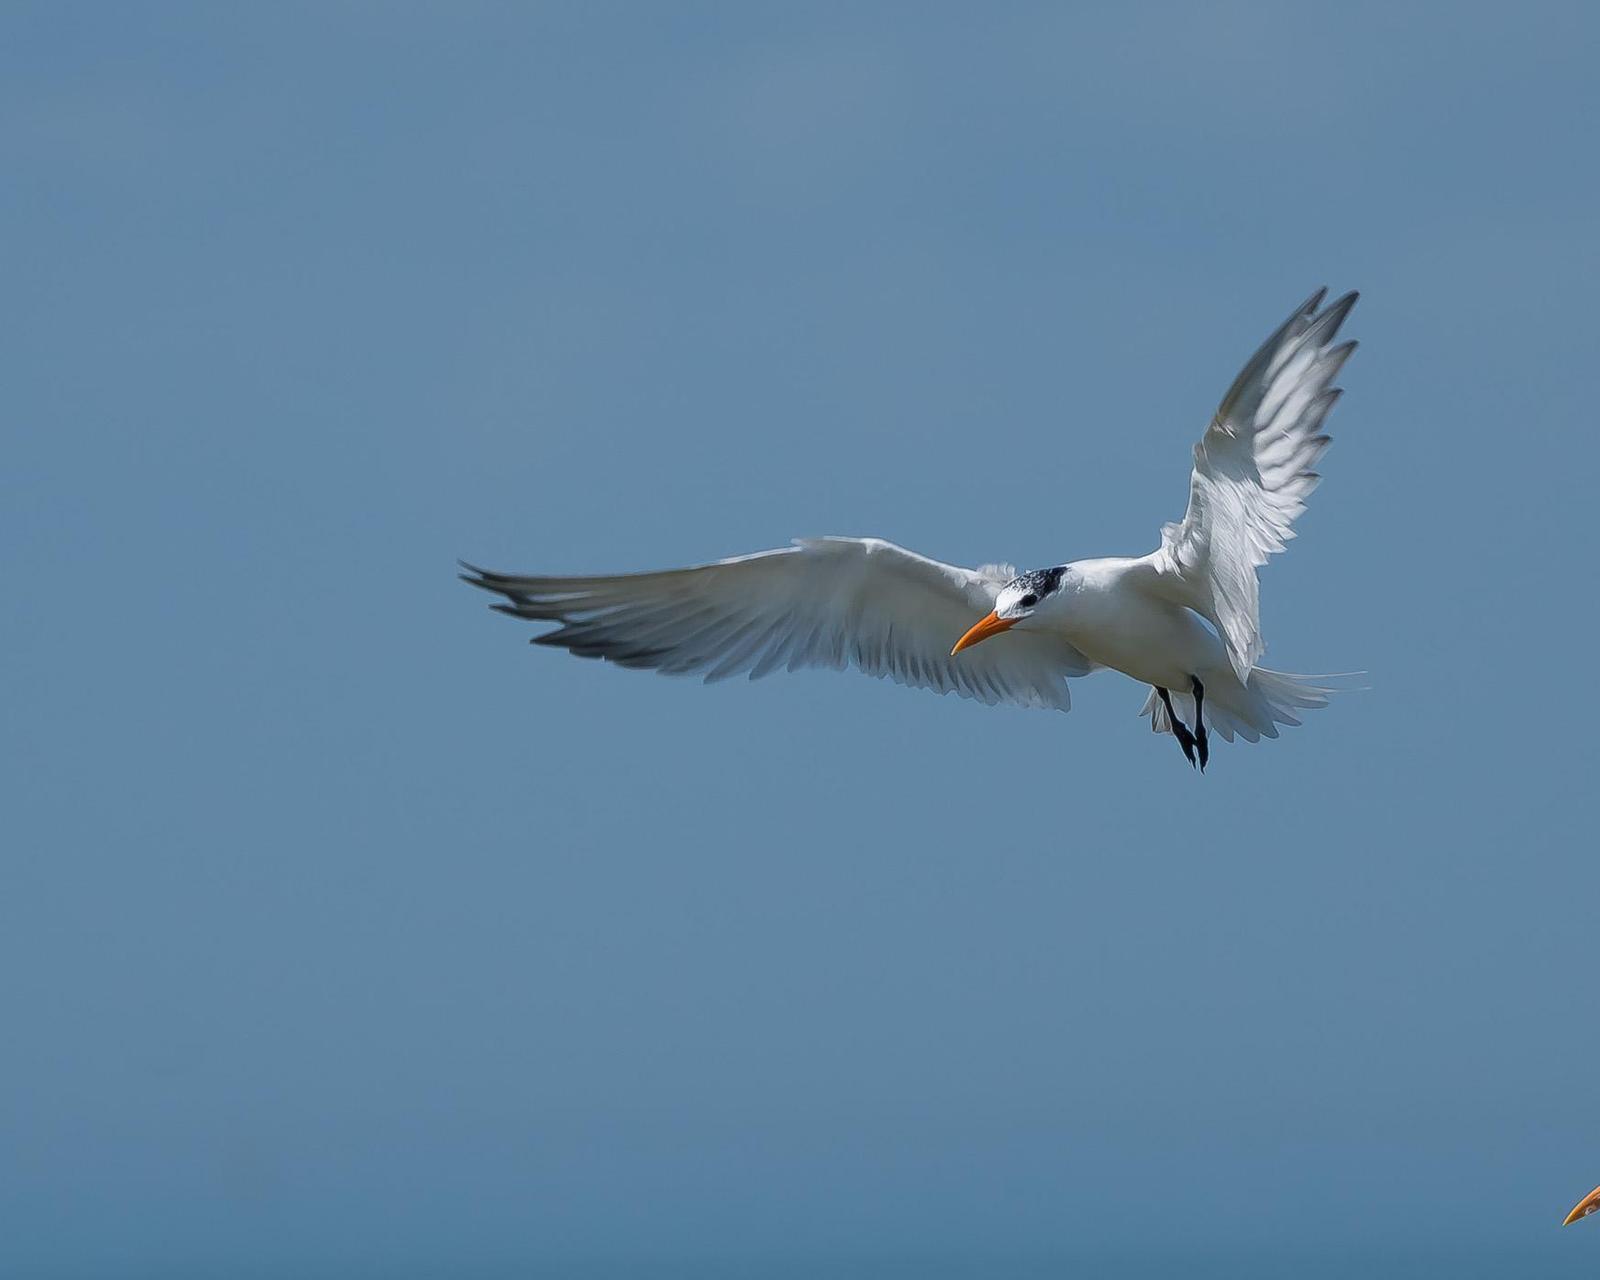 Royal Tern Photo by Gerald Hoekstra